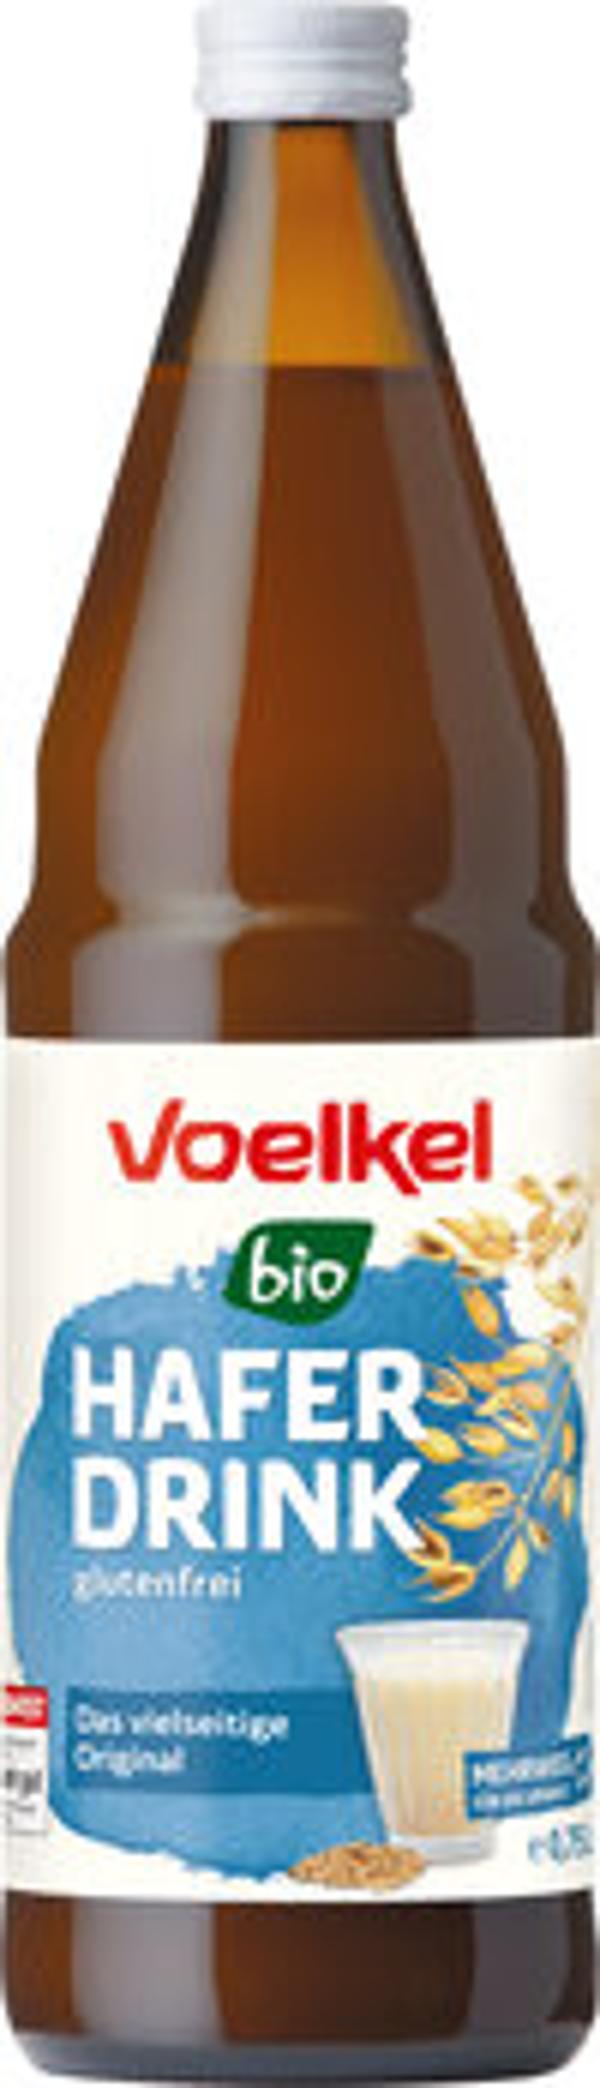 Produktfoto zu Voelkel Haferdrink Flasche 0,75l